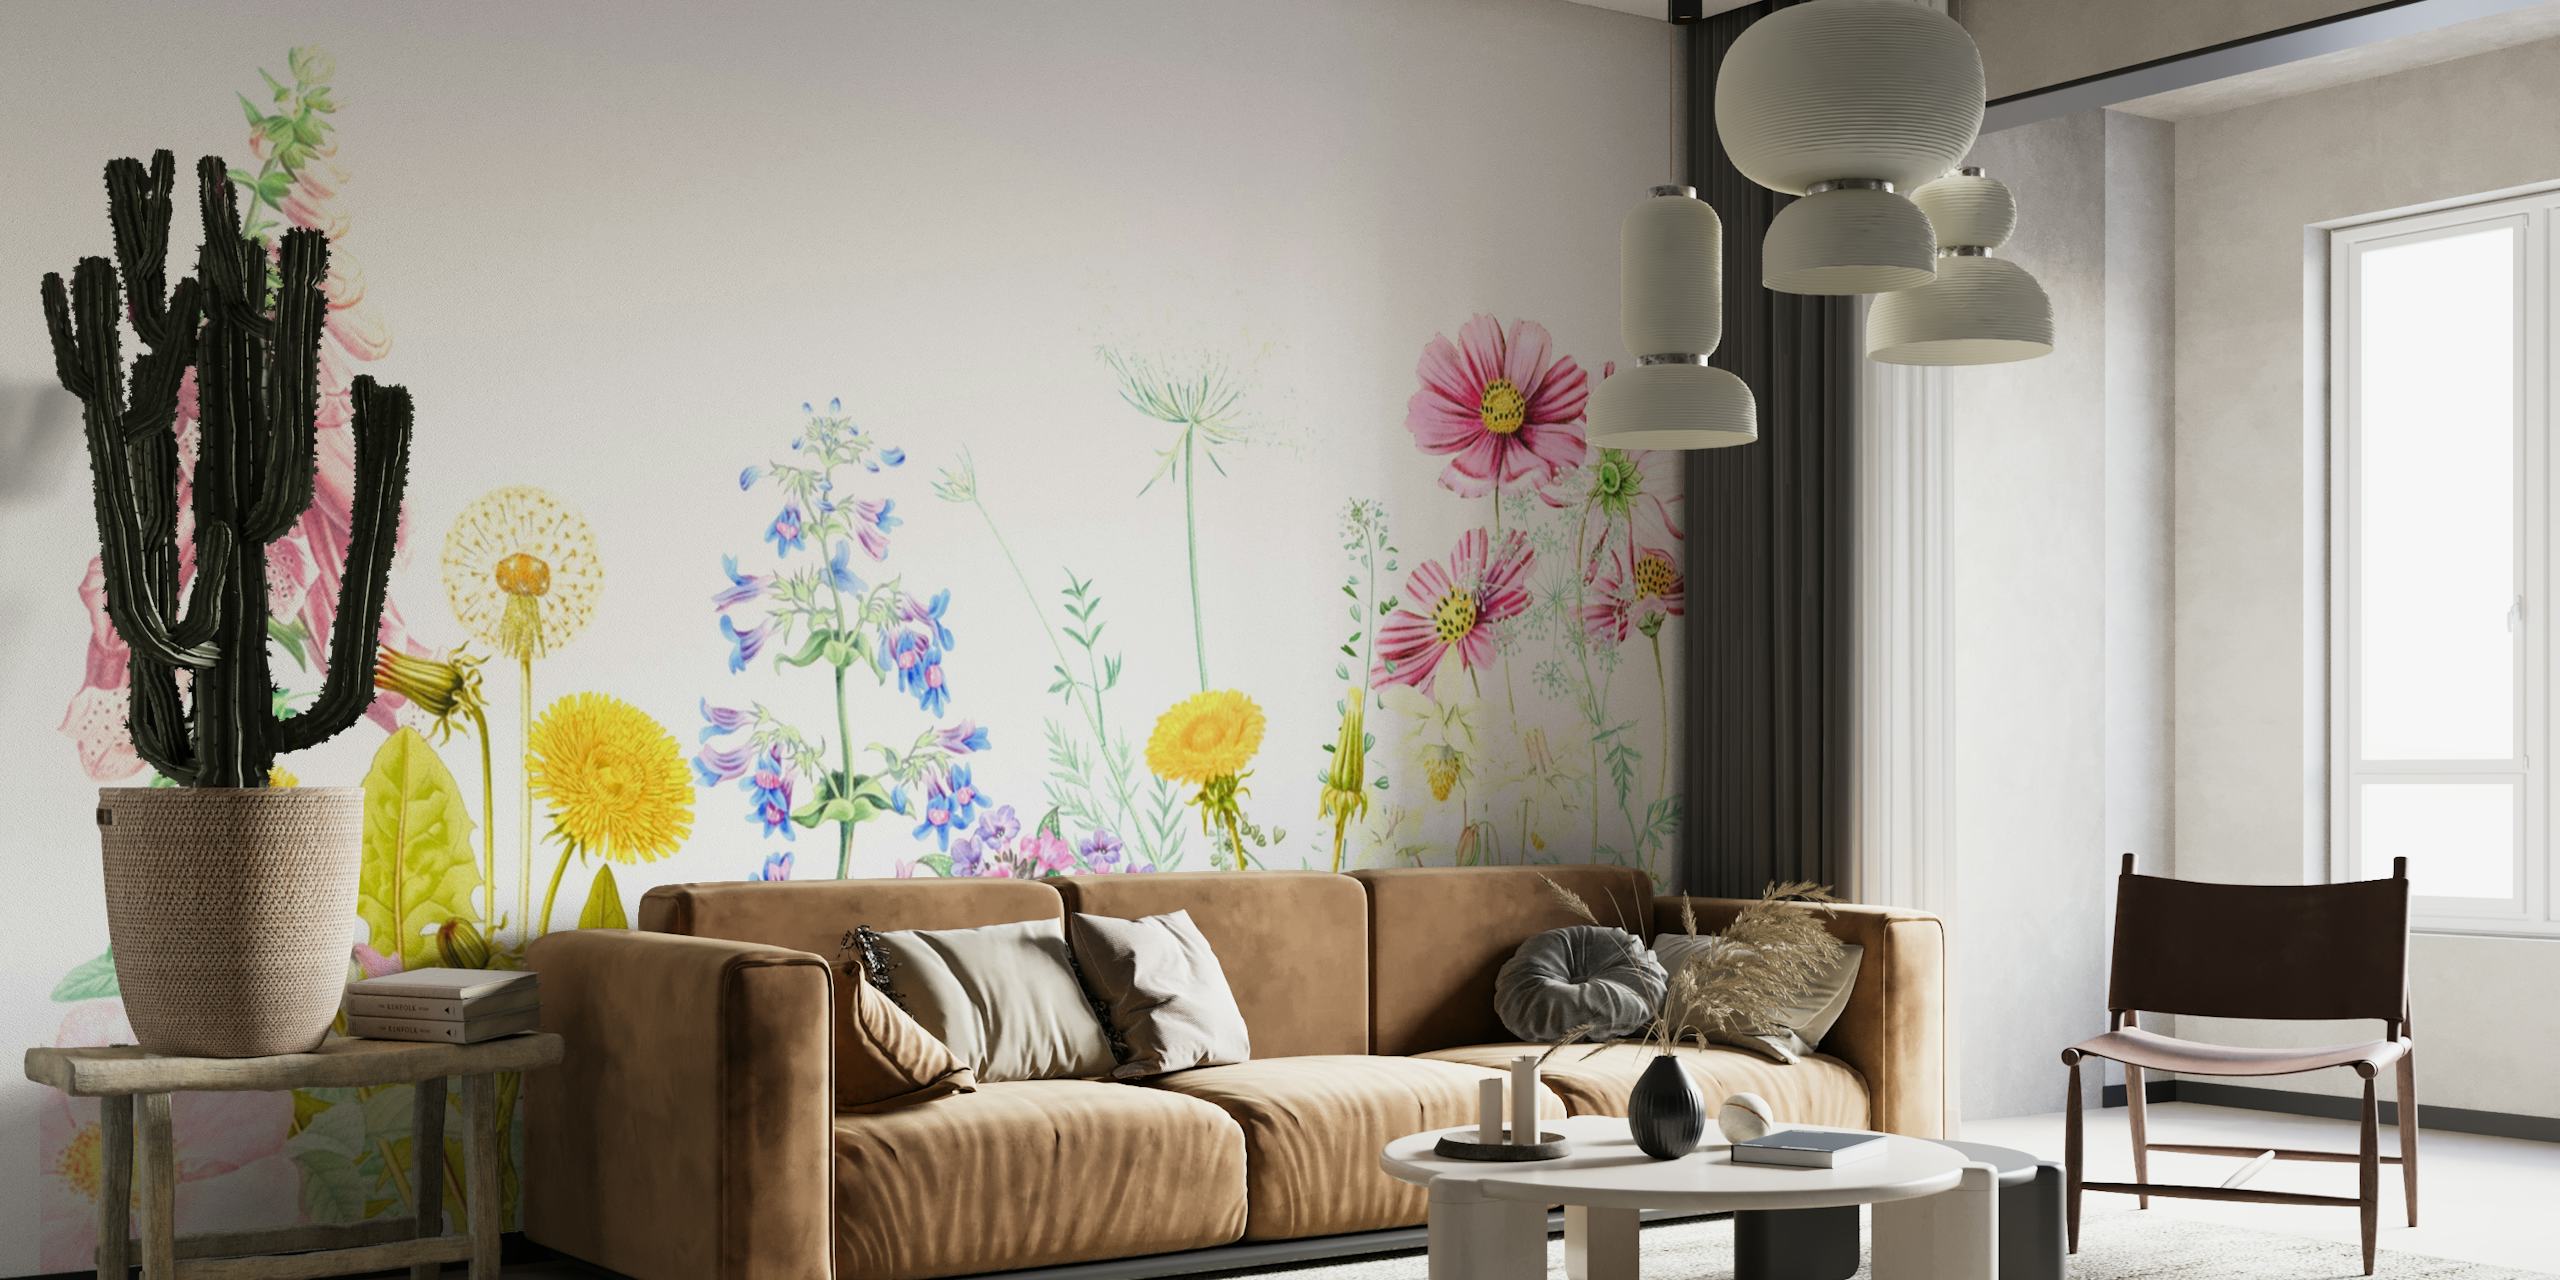 Un colorido mural de un prado de flores primaverales con varias flores